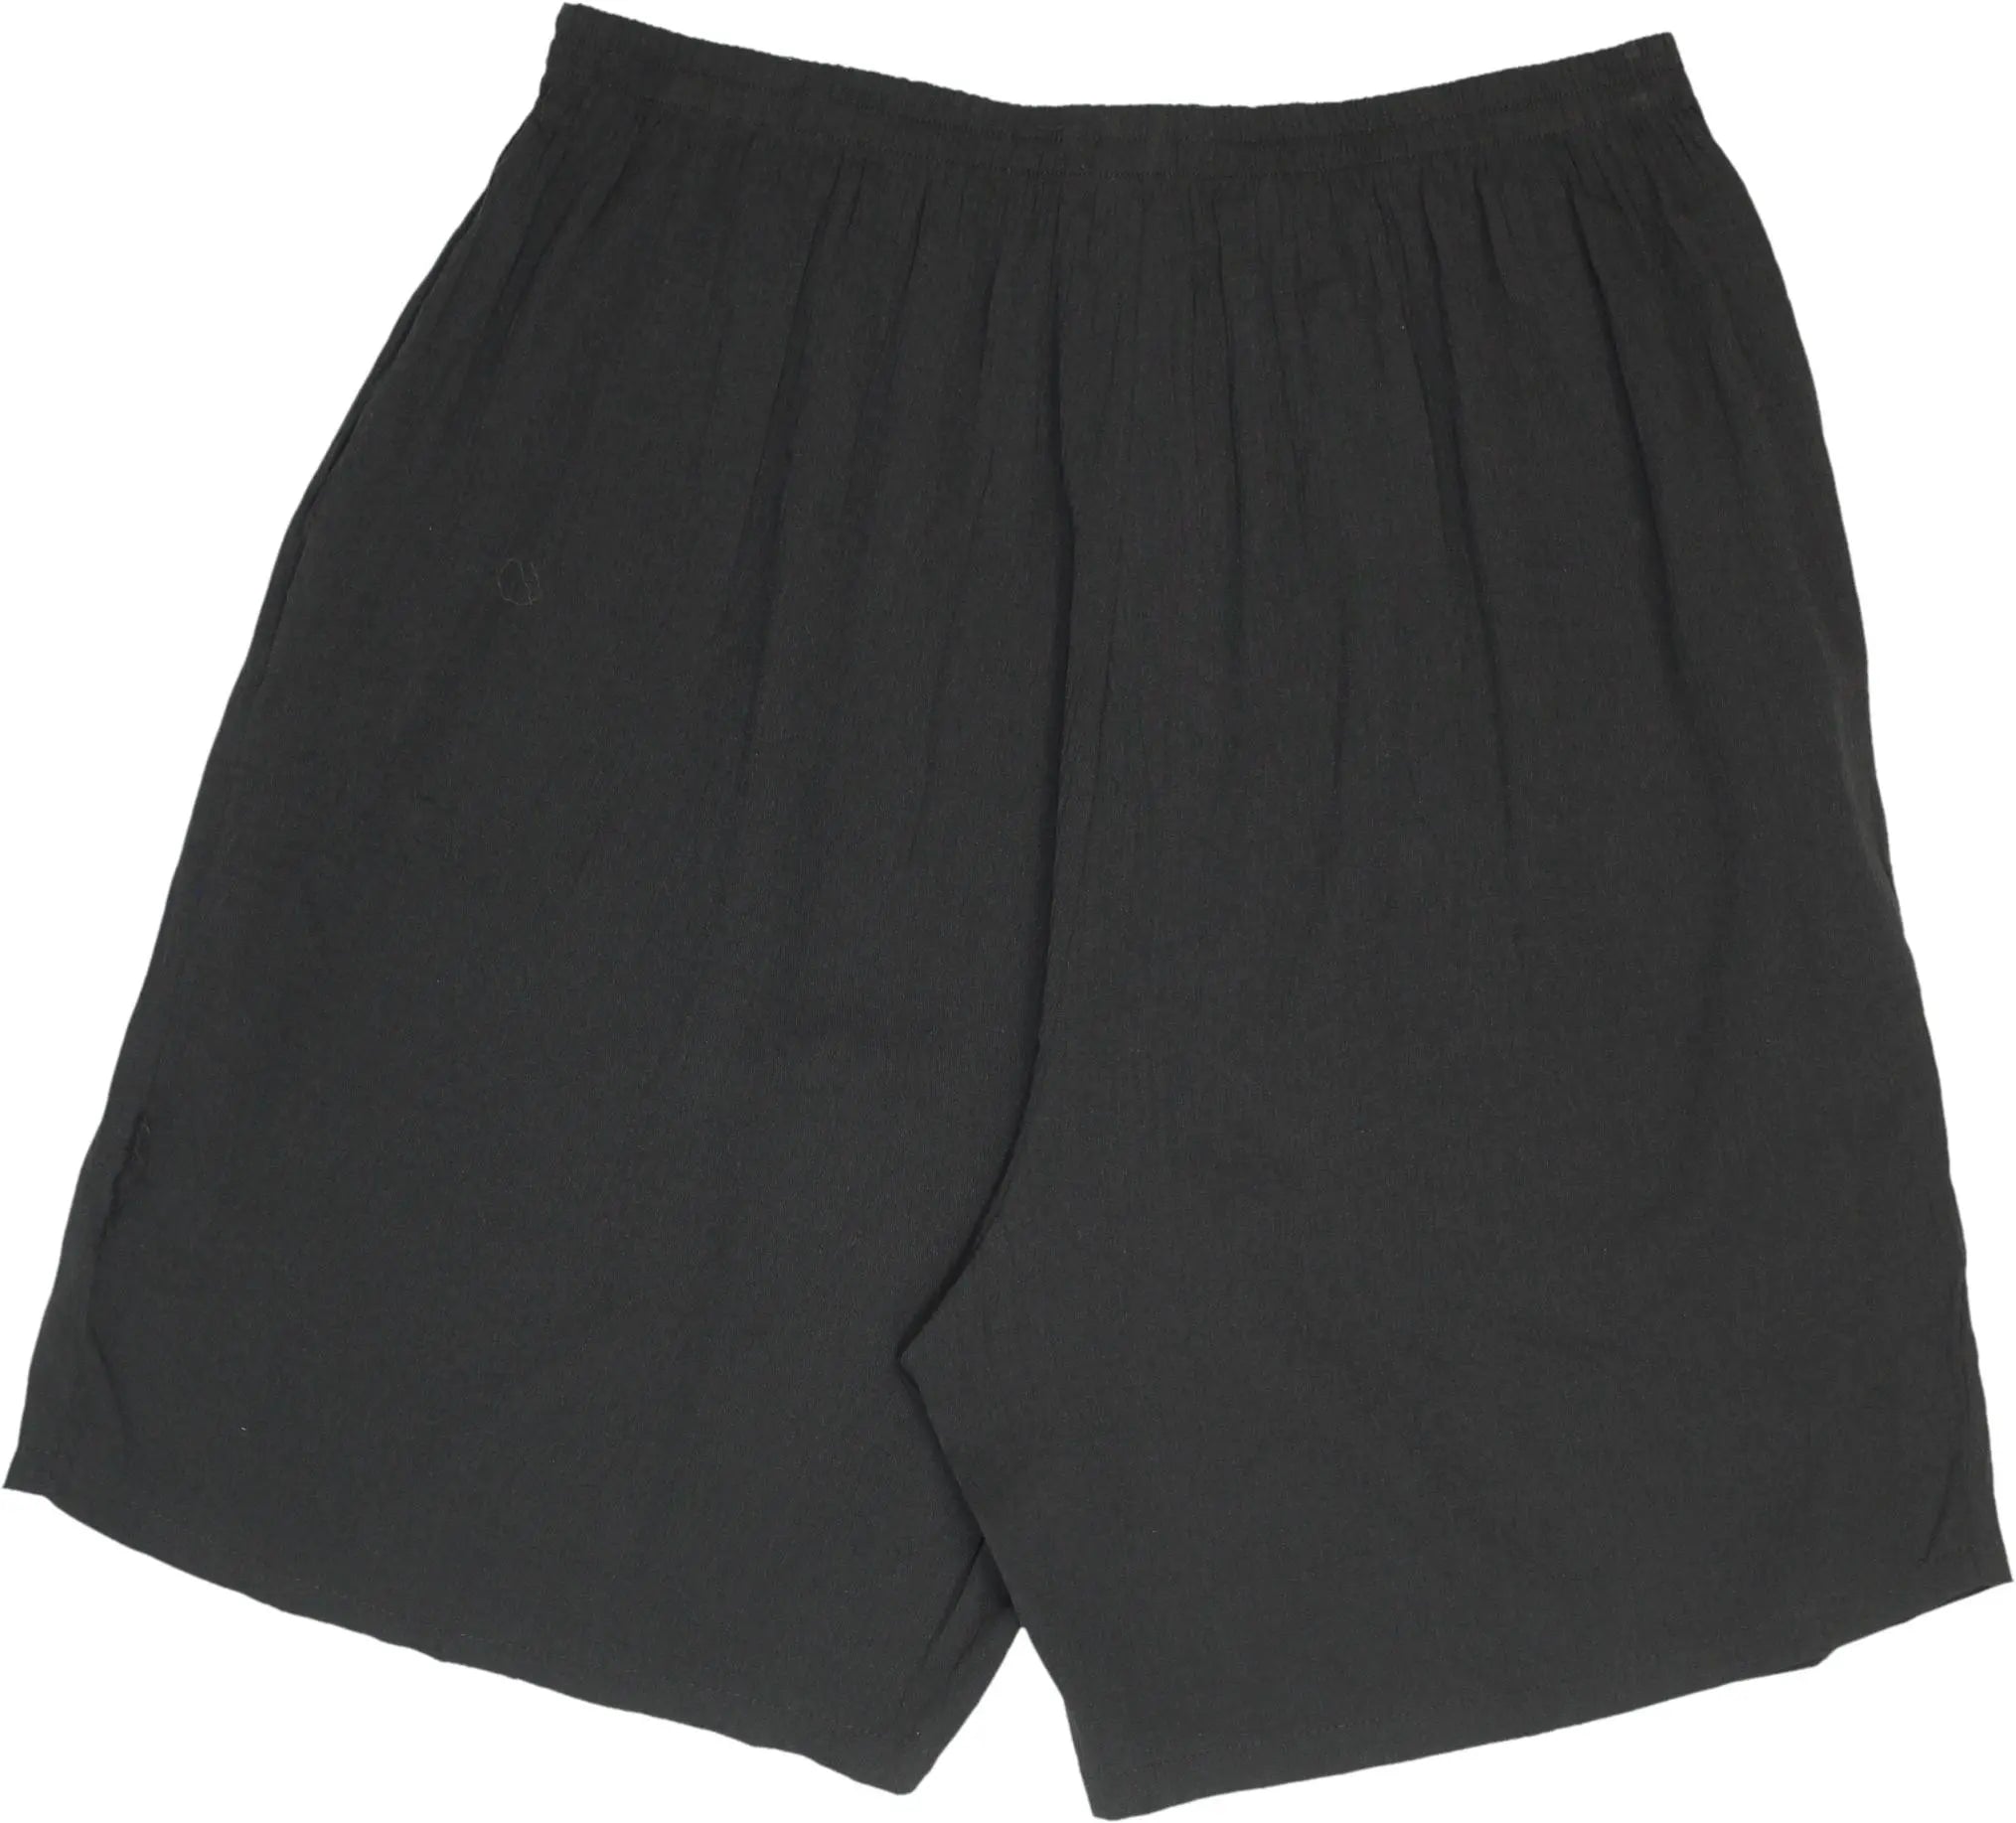 Si Belle et Paris - 90s Black Shorts- ThriftTale.com - Vintage and second handclothing